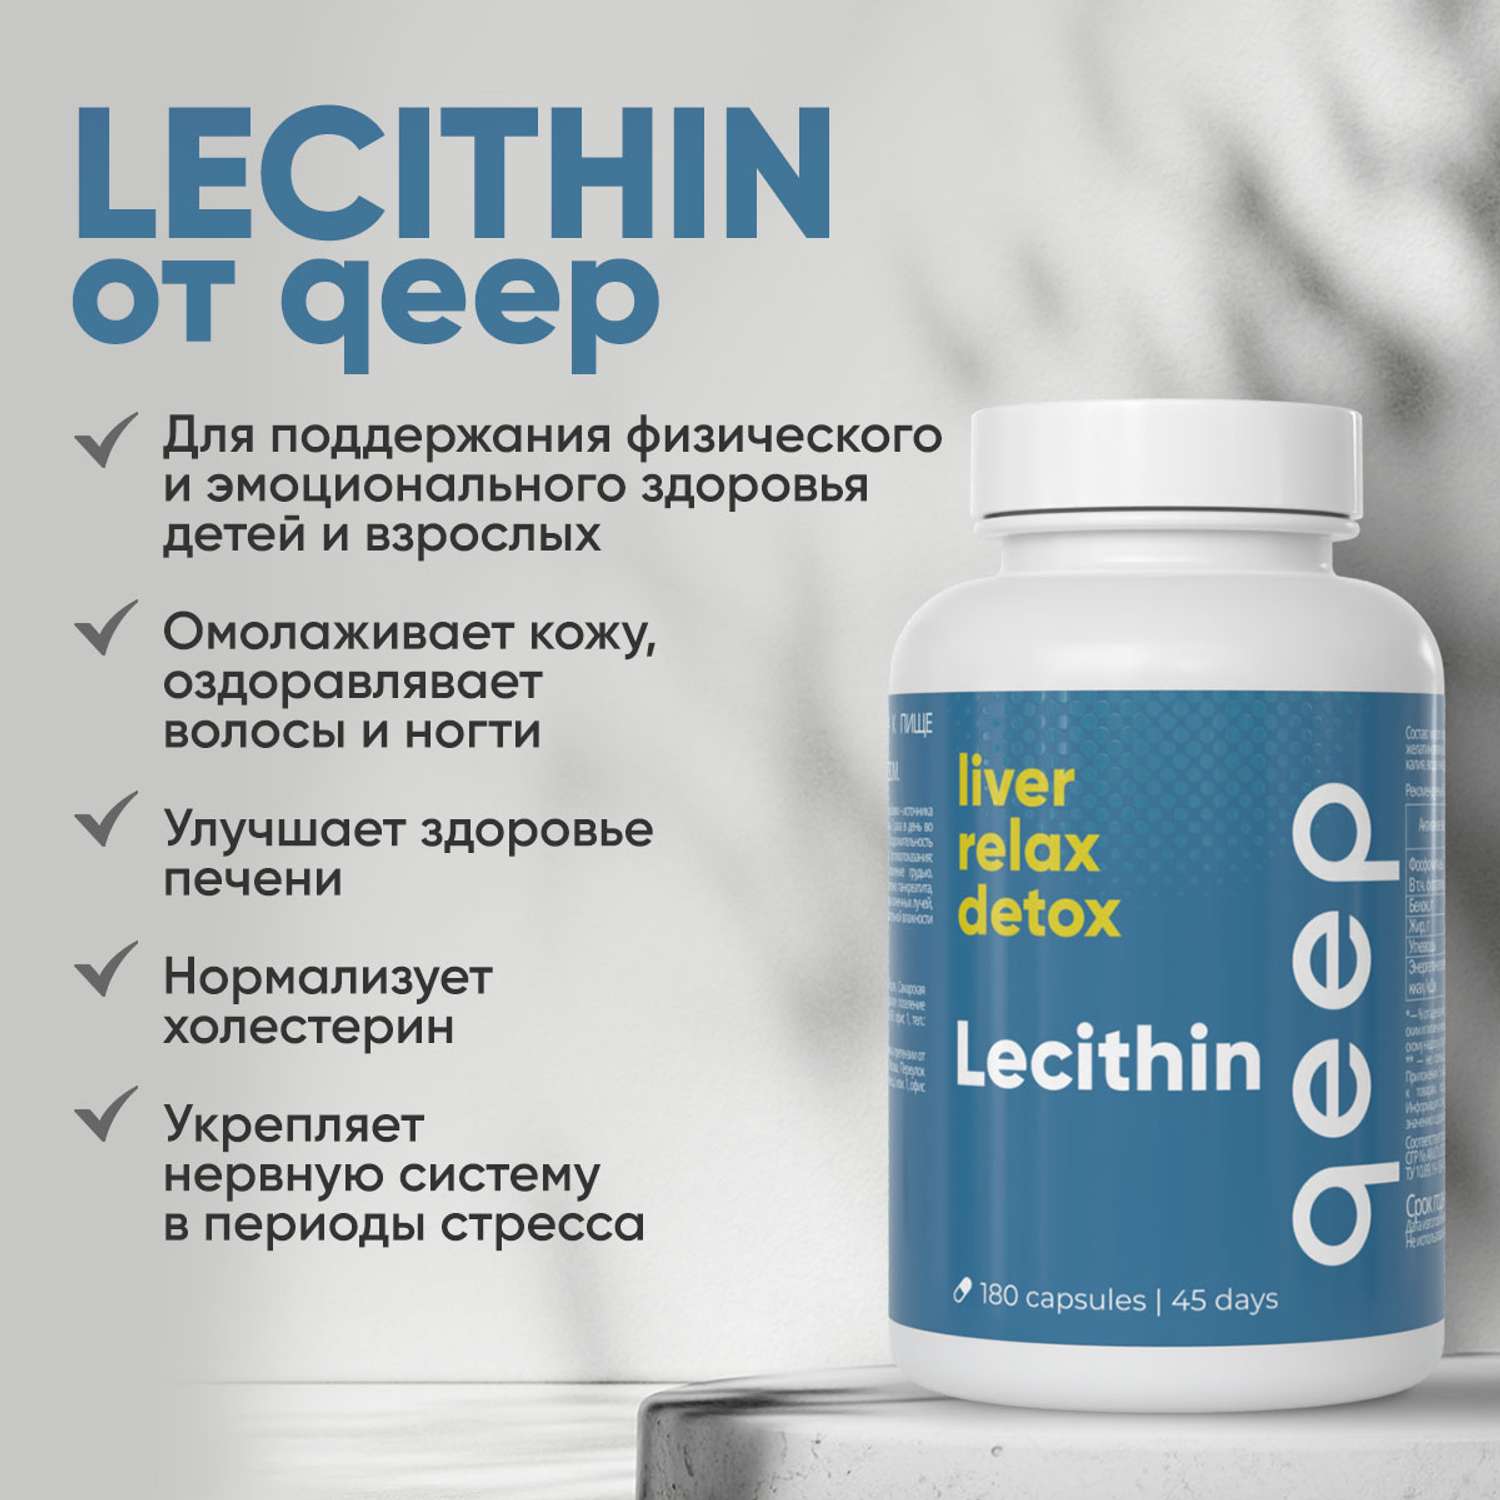 Лецитин подсолнечный qeep витамины для похудения и печени - фото 8